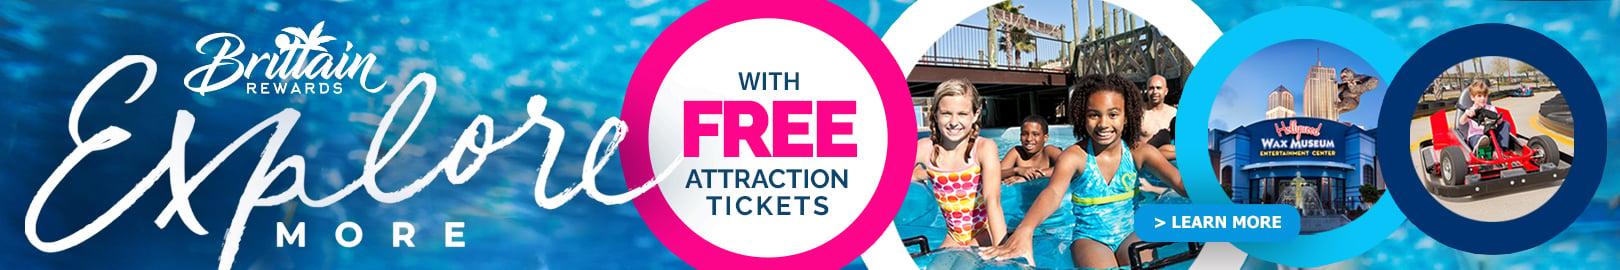 Free Attraction Tickets with Brittain Rewards